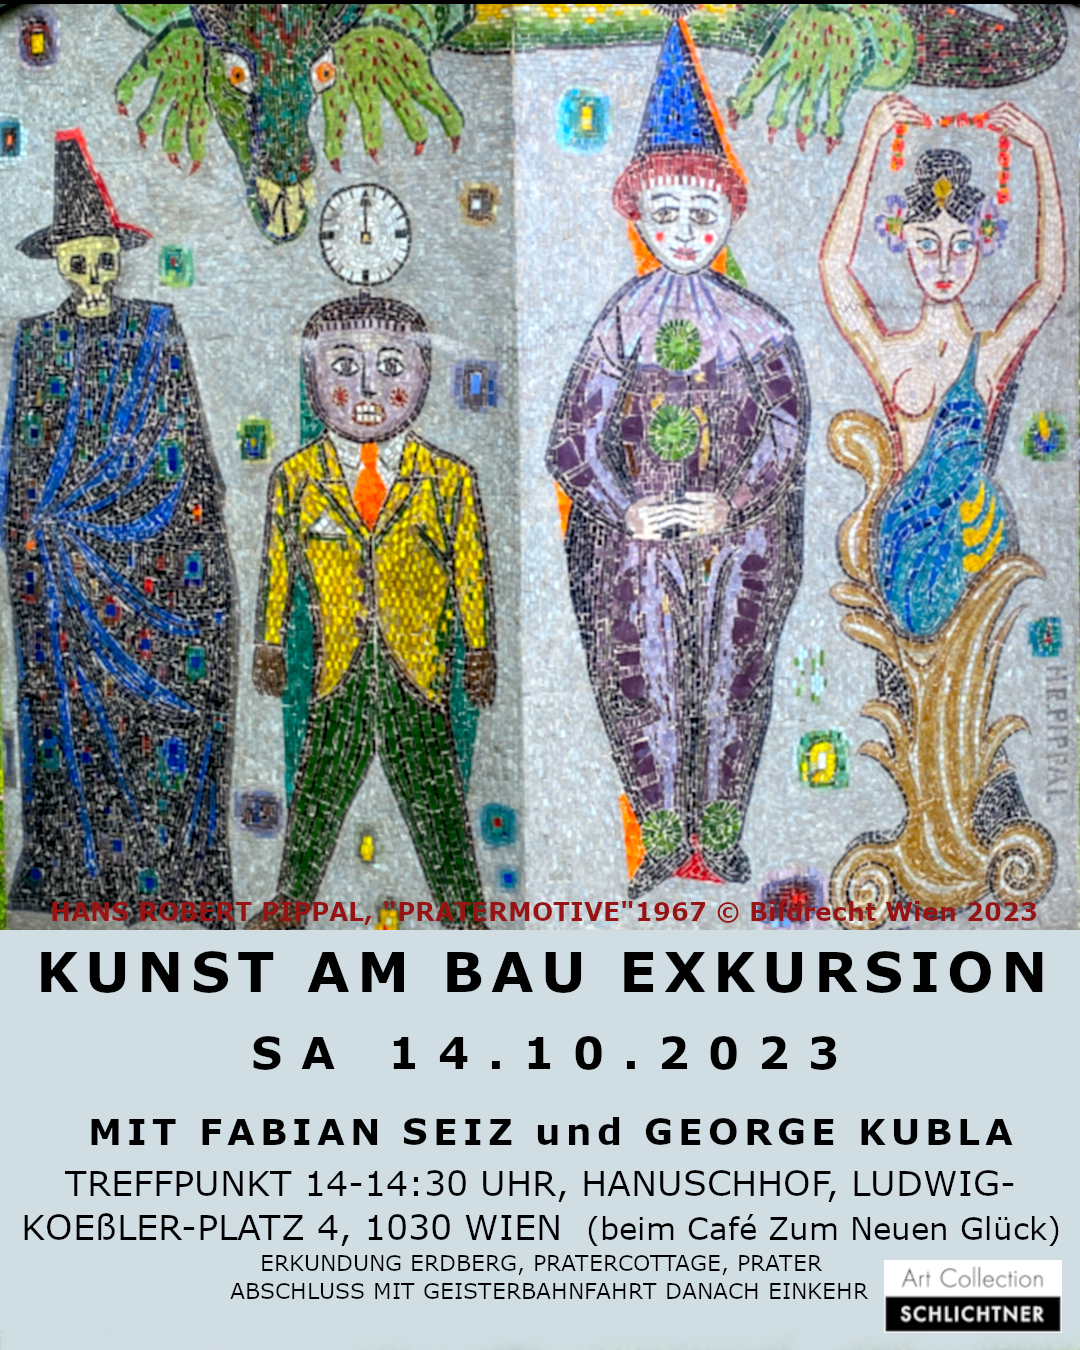 Excursion „Percent for art/Kunst am Bau“ with Fabian Seiz and George Kubla. Vienna/Wien: Erdberg, Prattercottage, Prater. Saturday October 14, 2023